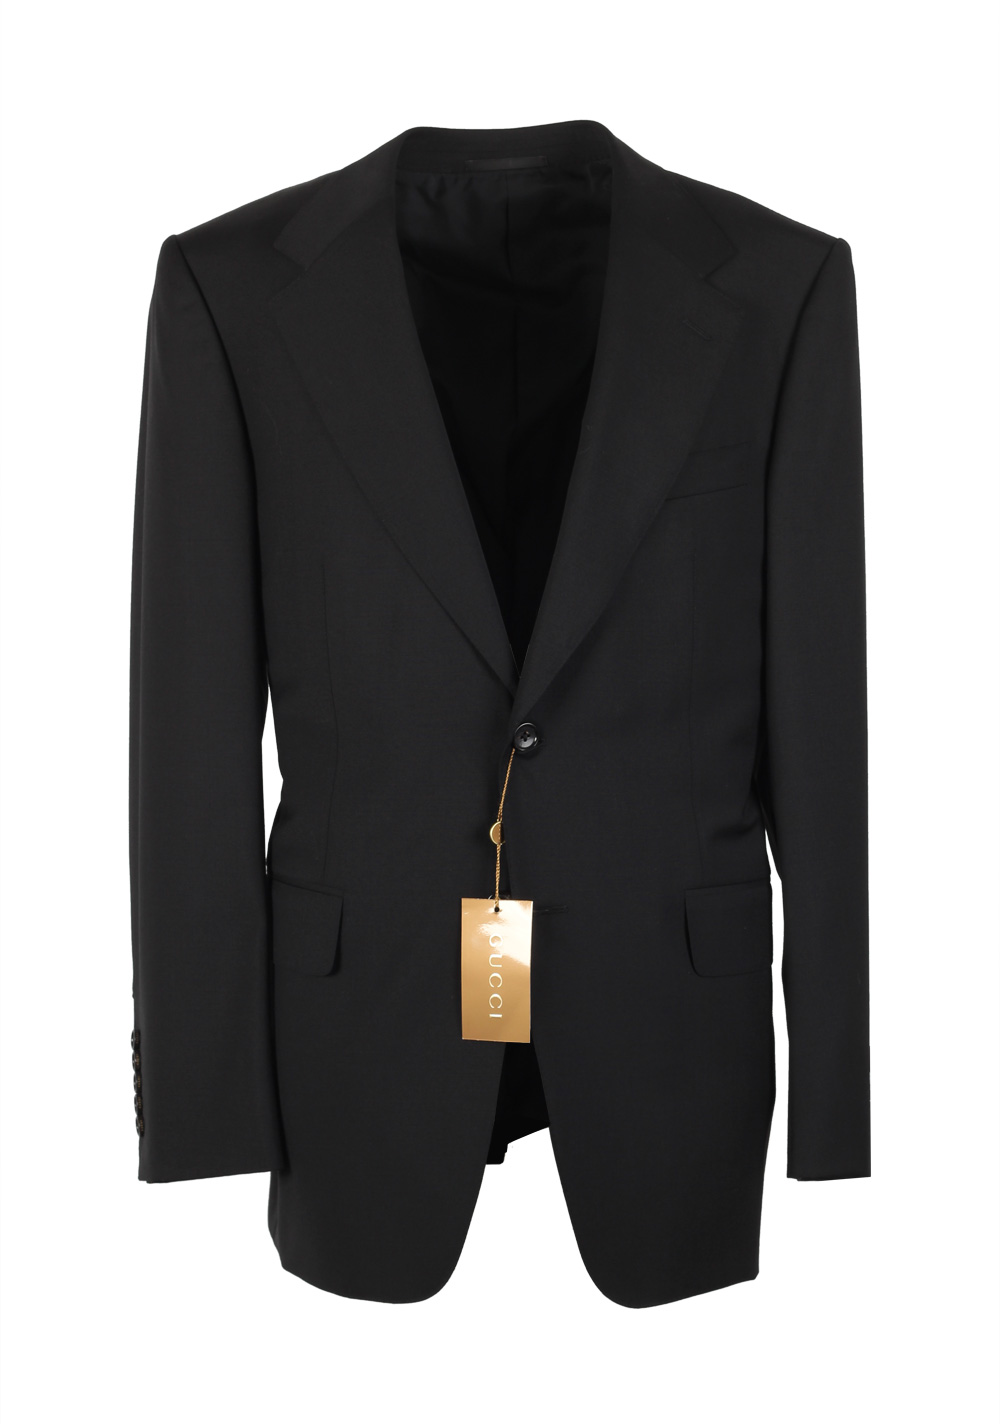 Gucci Black Suit Size 50 / 40R U.S 